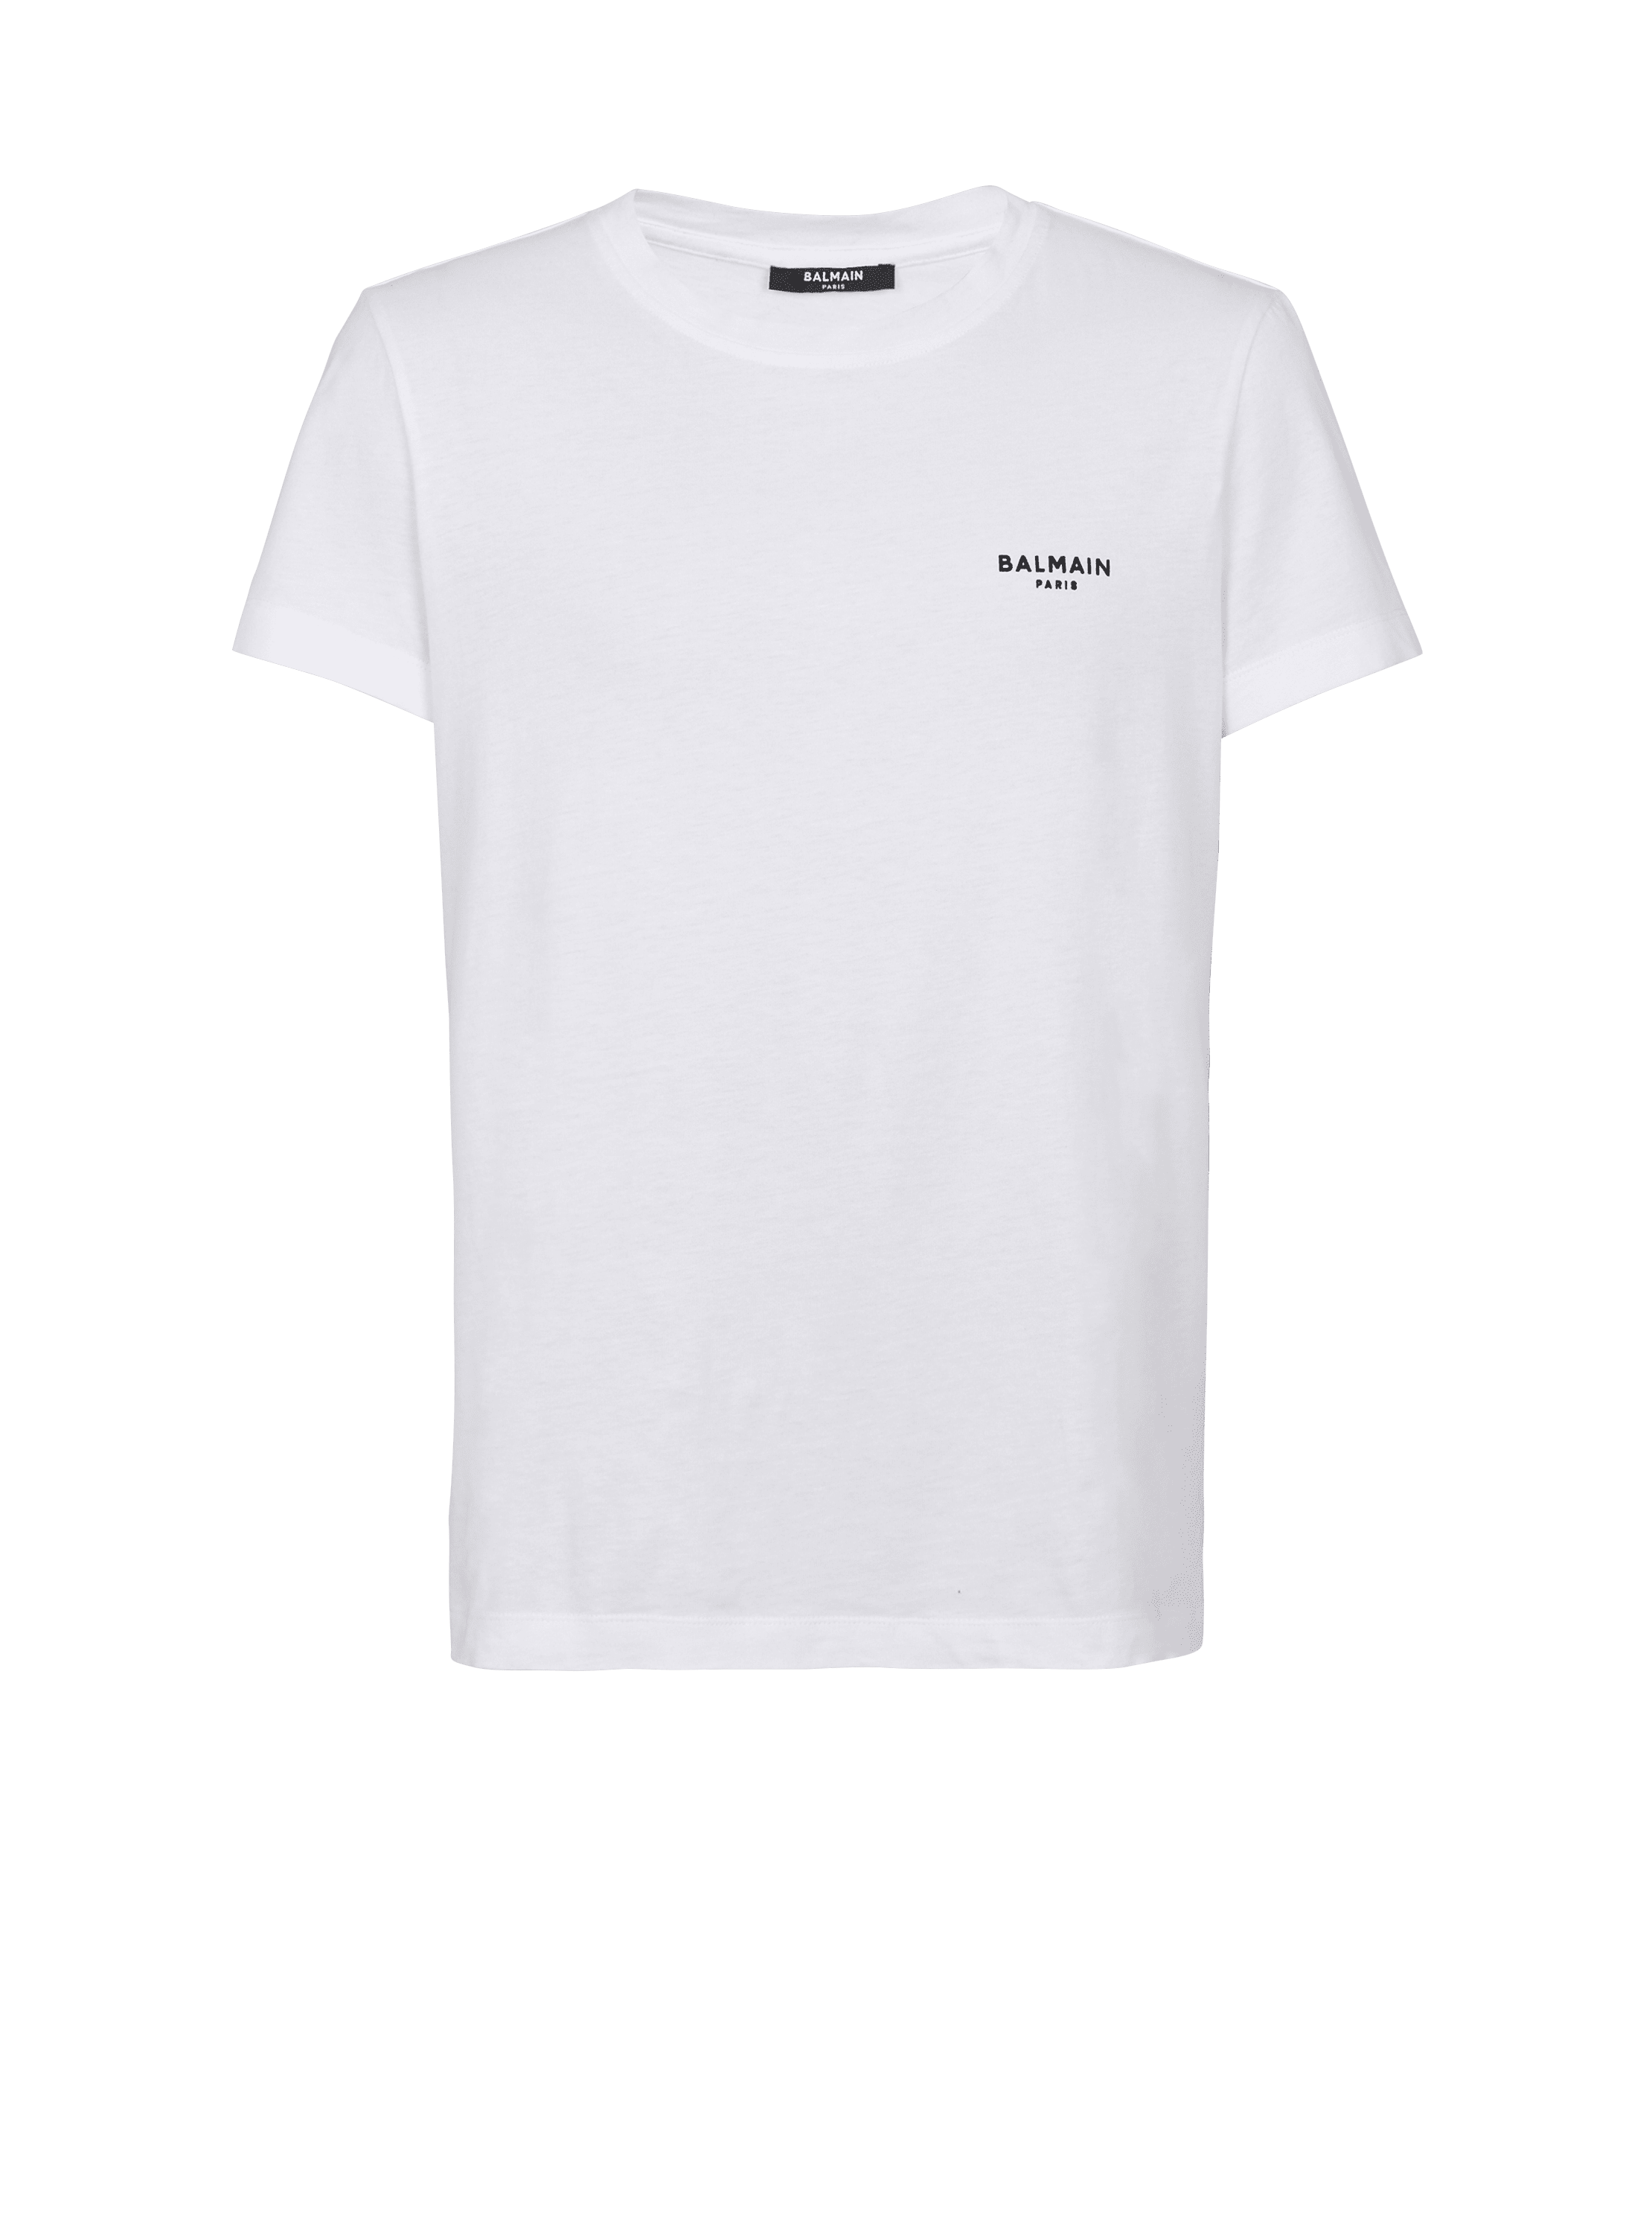 Balmain植绒T恤, white, hi-res